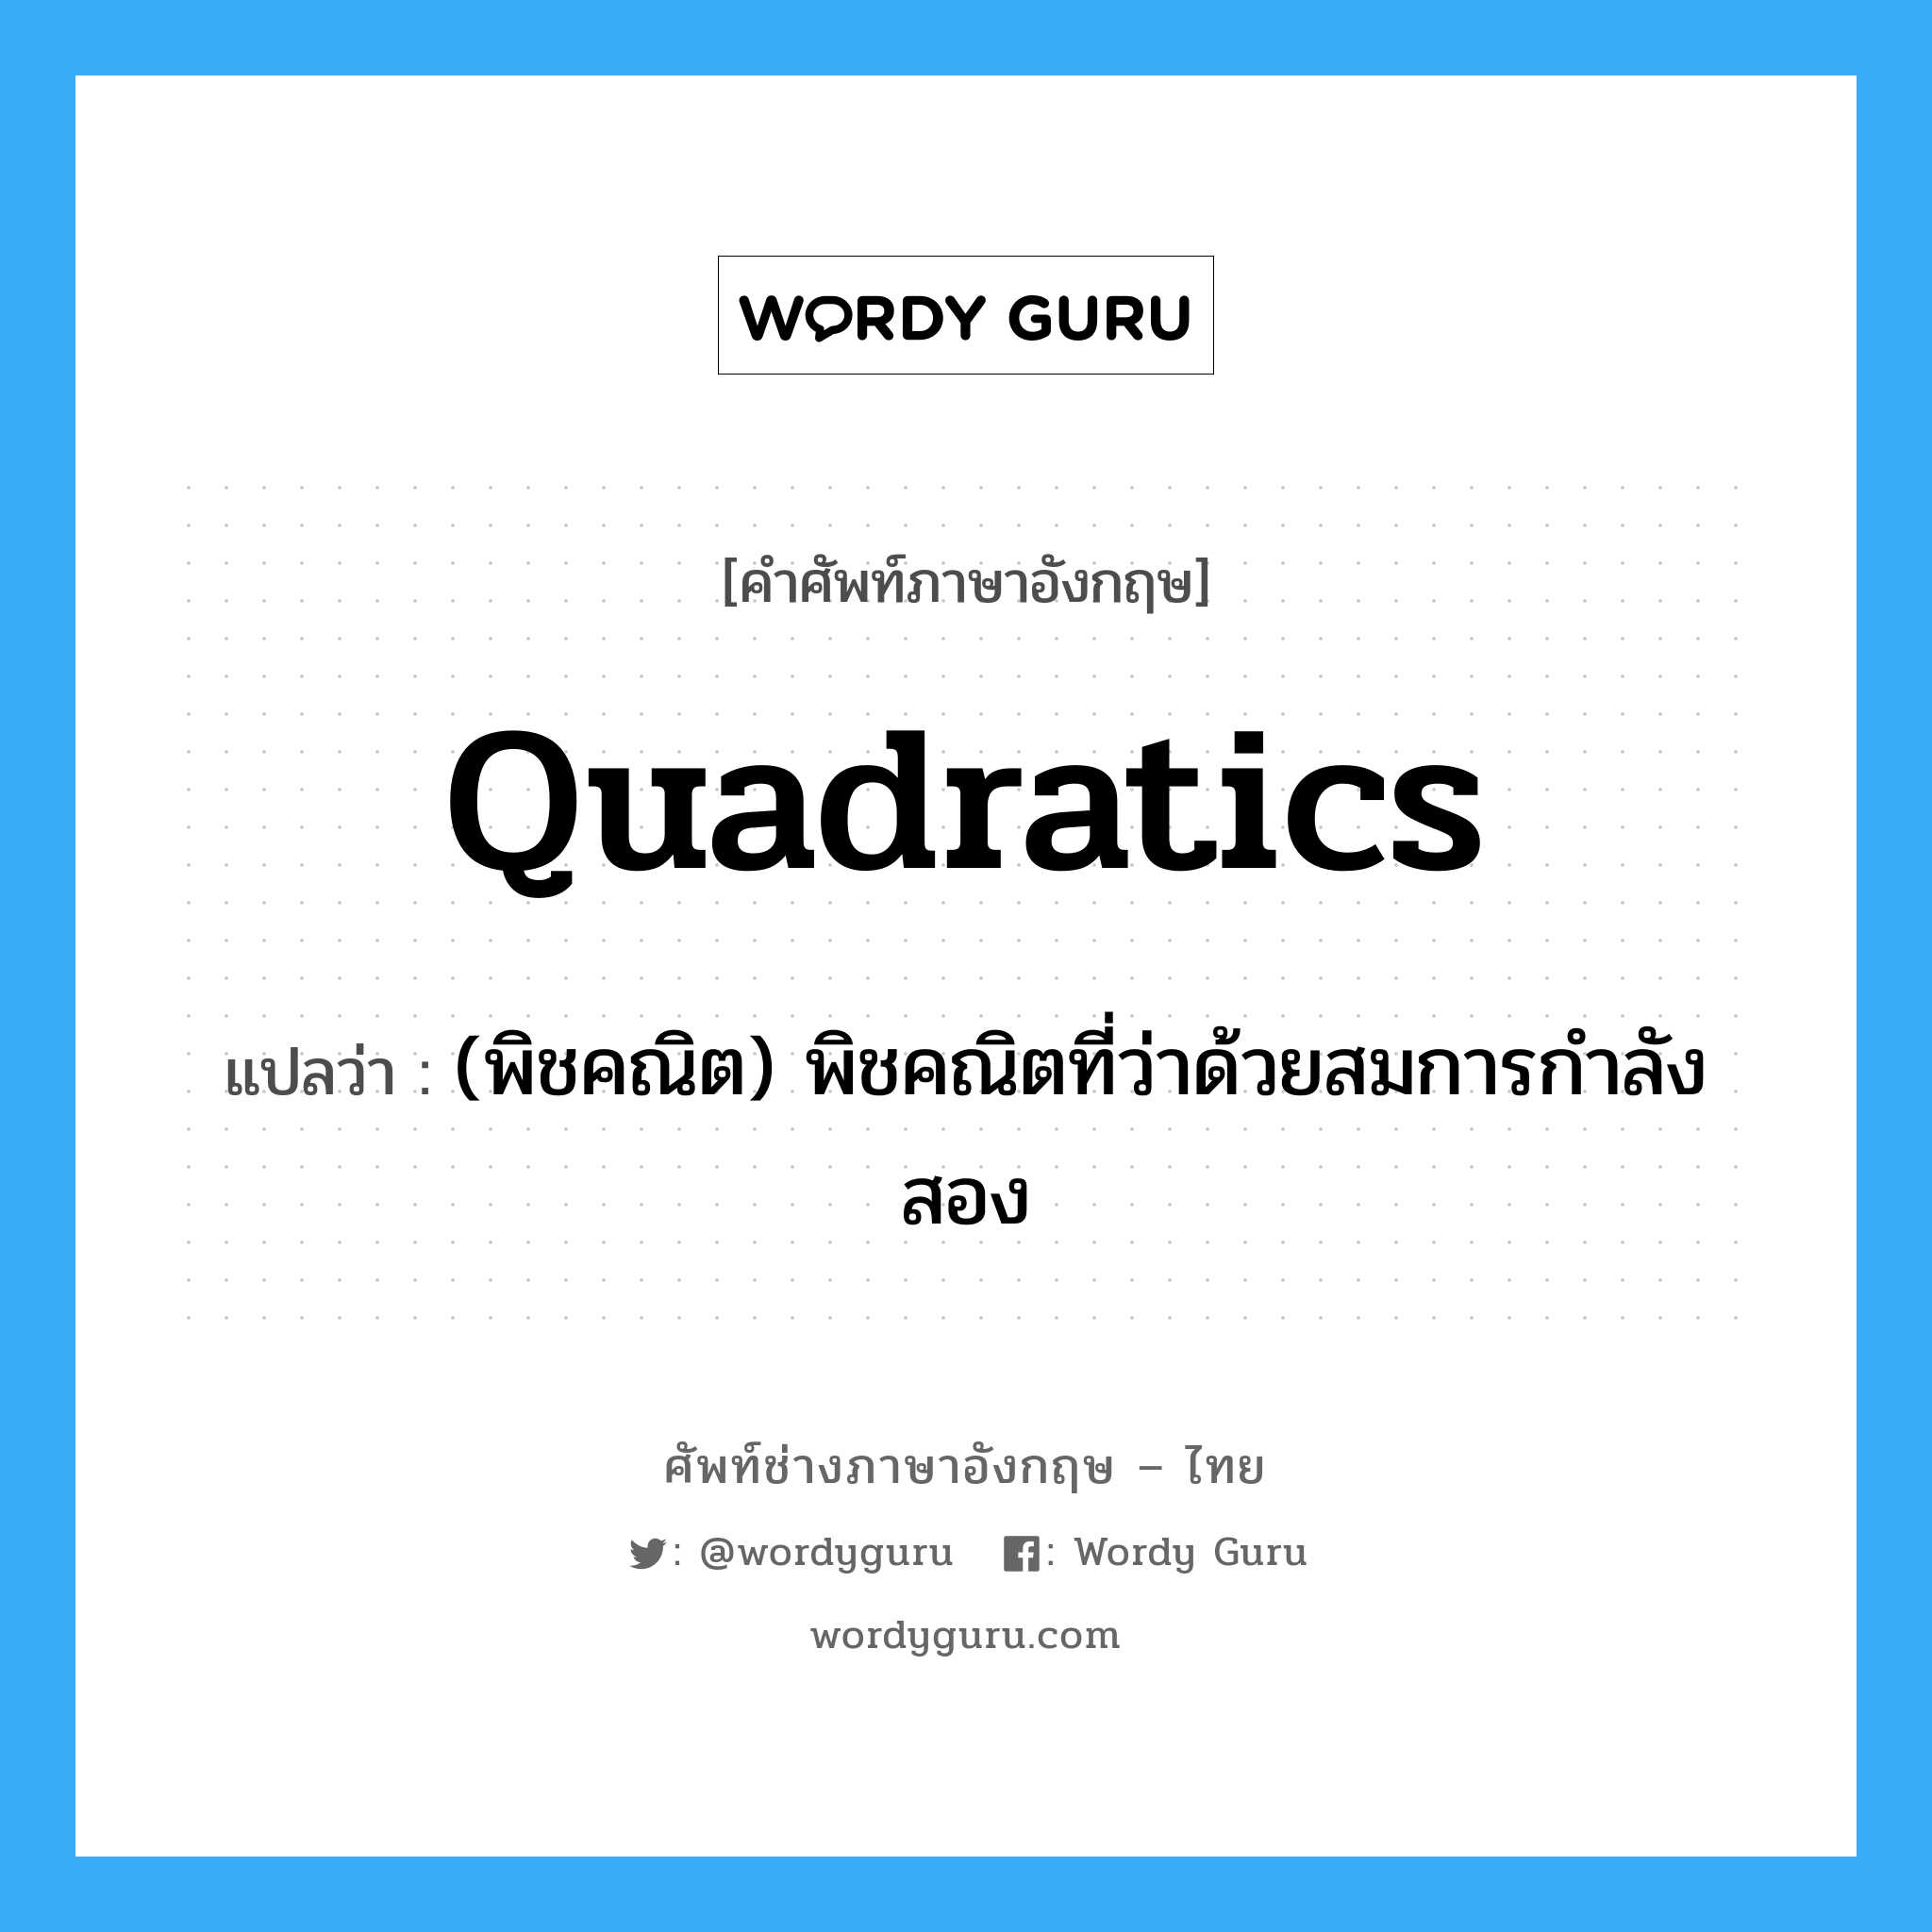 (พิชคณิต) พิชคณิตที่ว่าด้วยสมการกำลังสอง ภาษาอังกฤษ?, คำศัพท์ช่างภาษาอังกฤษ - ไทย (พิชคณิต) พิชคณิตที่ว่าด้วยสมการกำลังสอง คำศัพท์ภาษาอังกฤษ (พิชคณิต) พิชคณิตที่ว่าด้วยสมการกำลังสอง แปลว่า quadratics